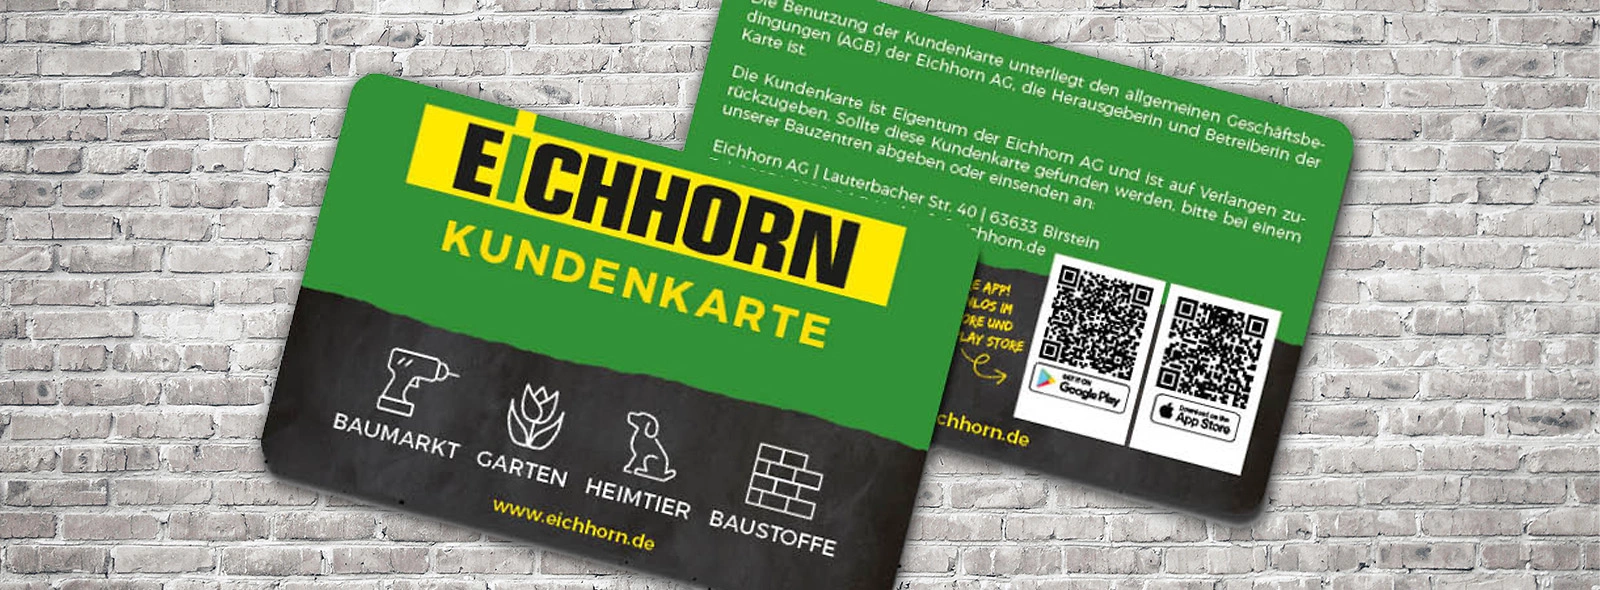 Eichhorn Startseite 1600x590 Desktop Kundenkarte